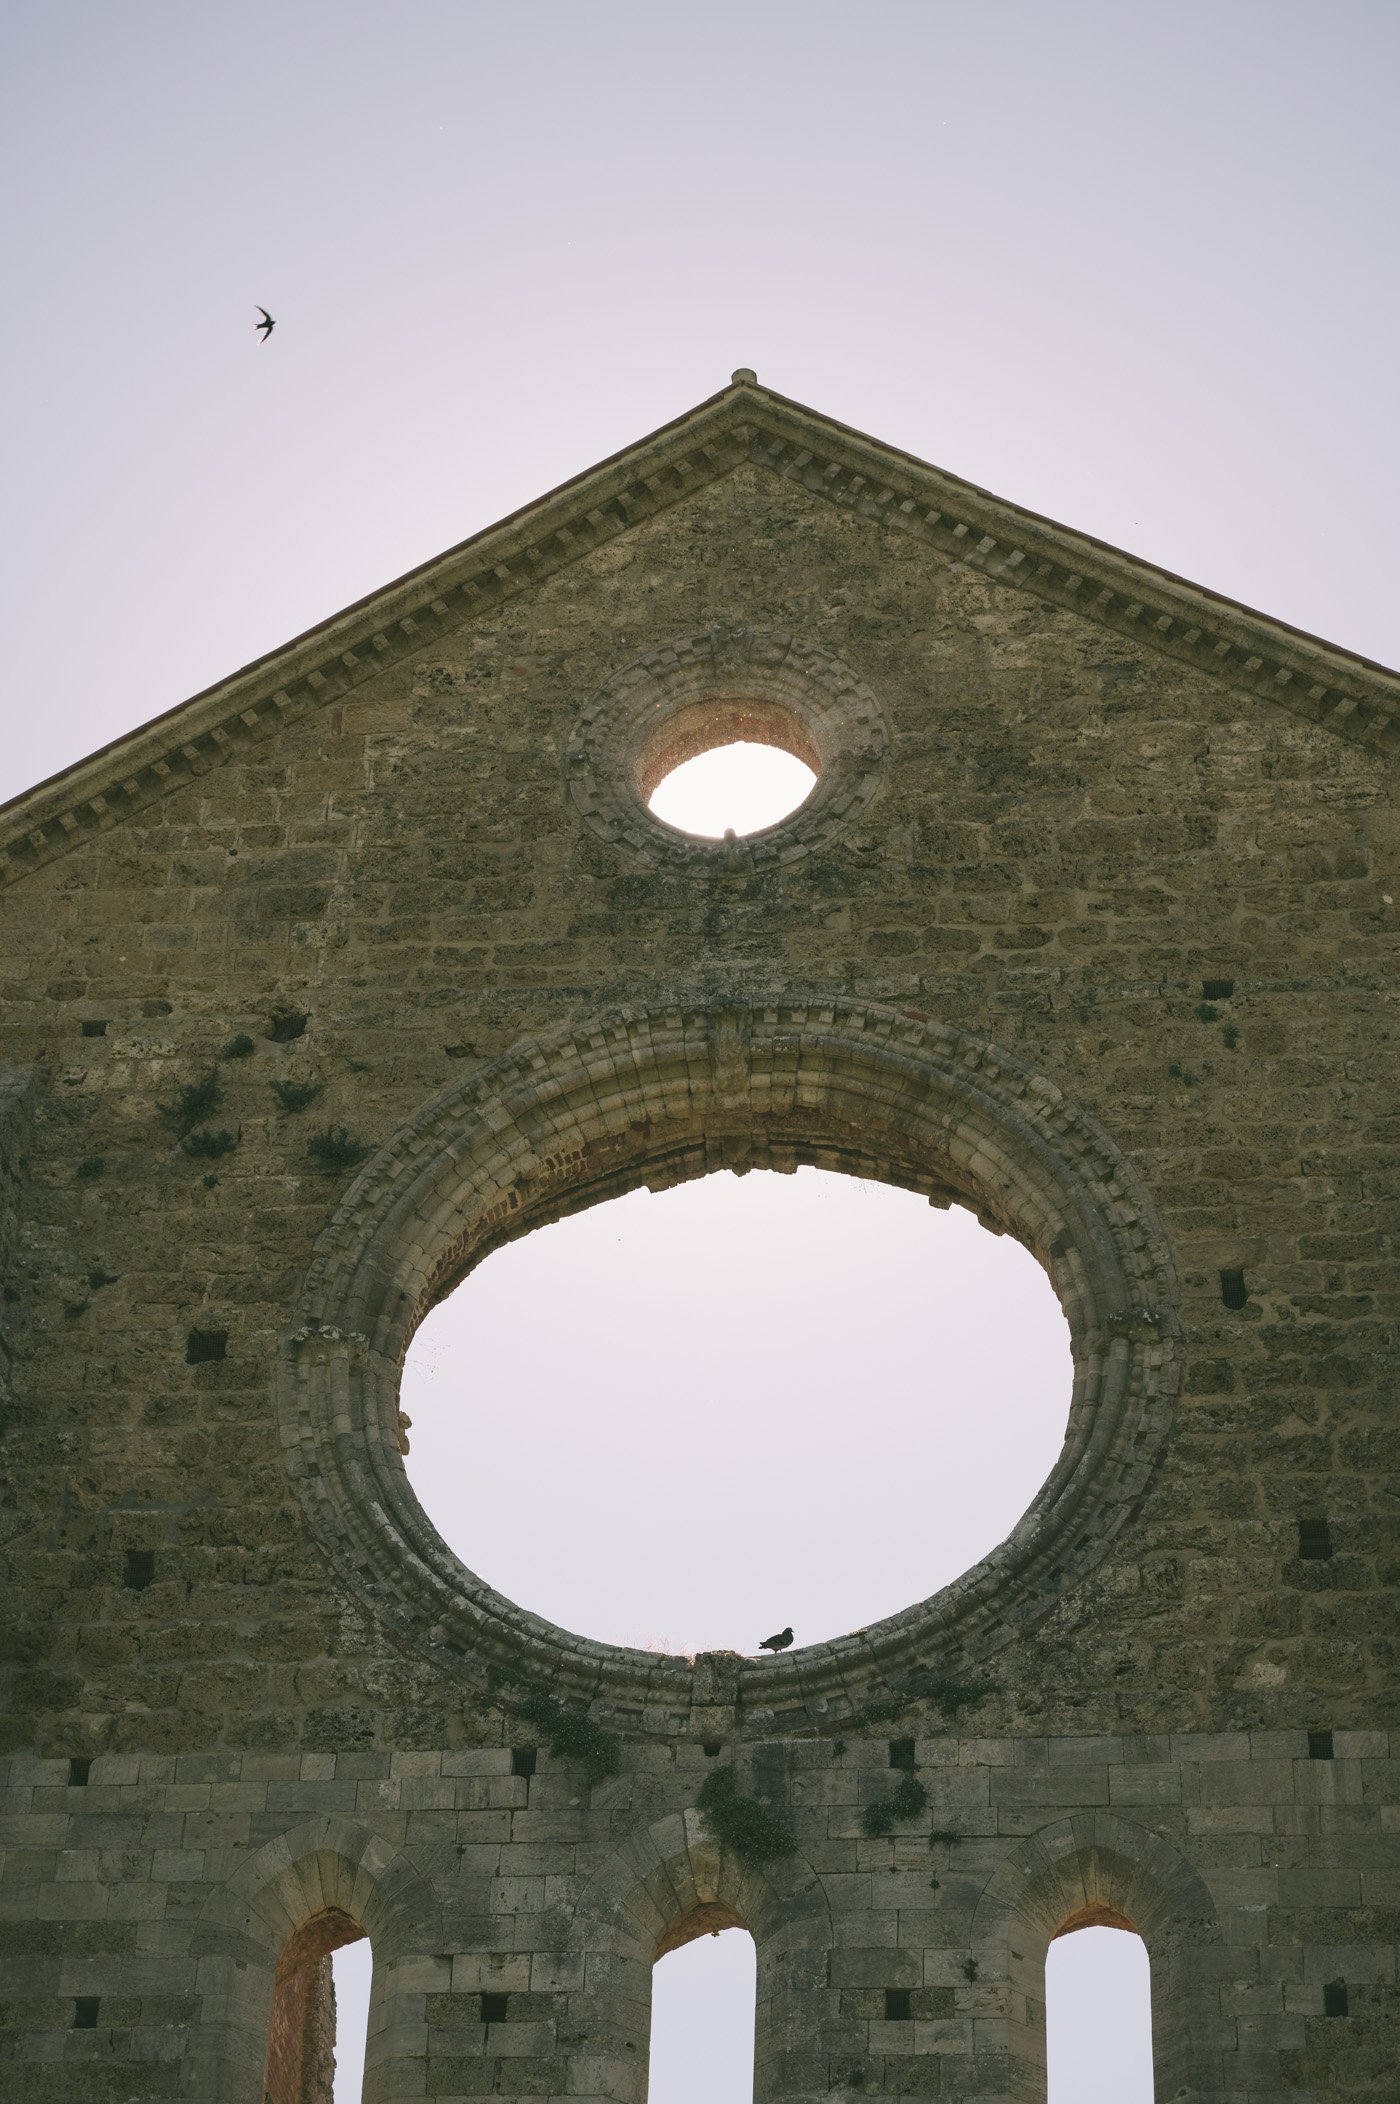 Abbey of San Galgano Tuscany